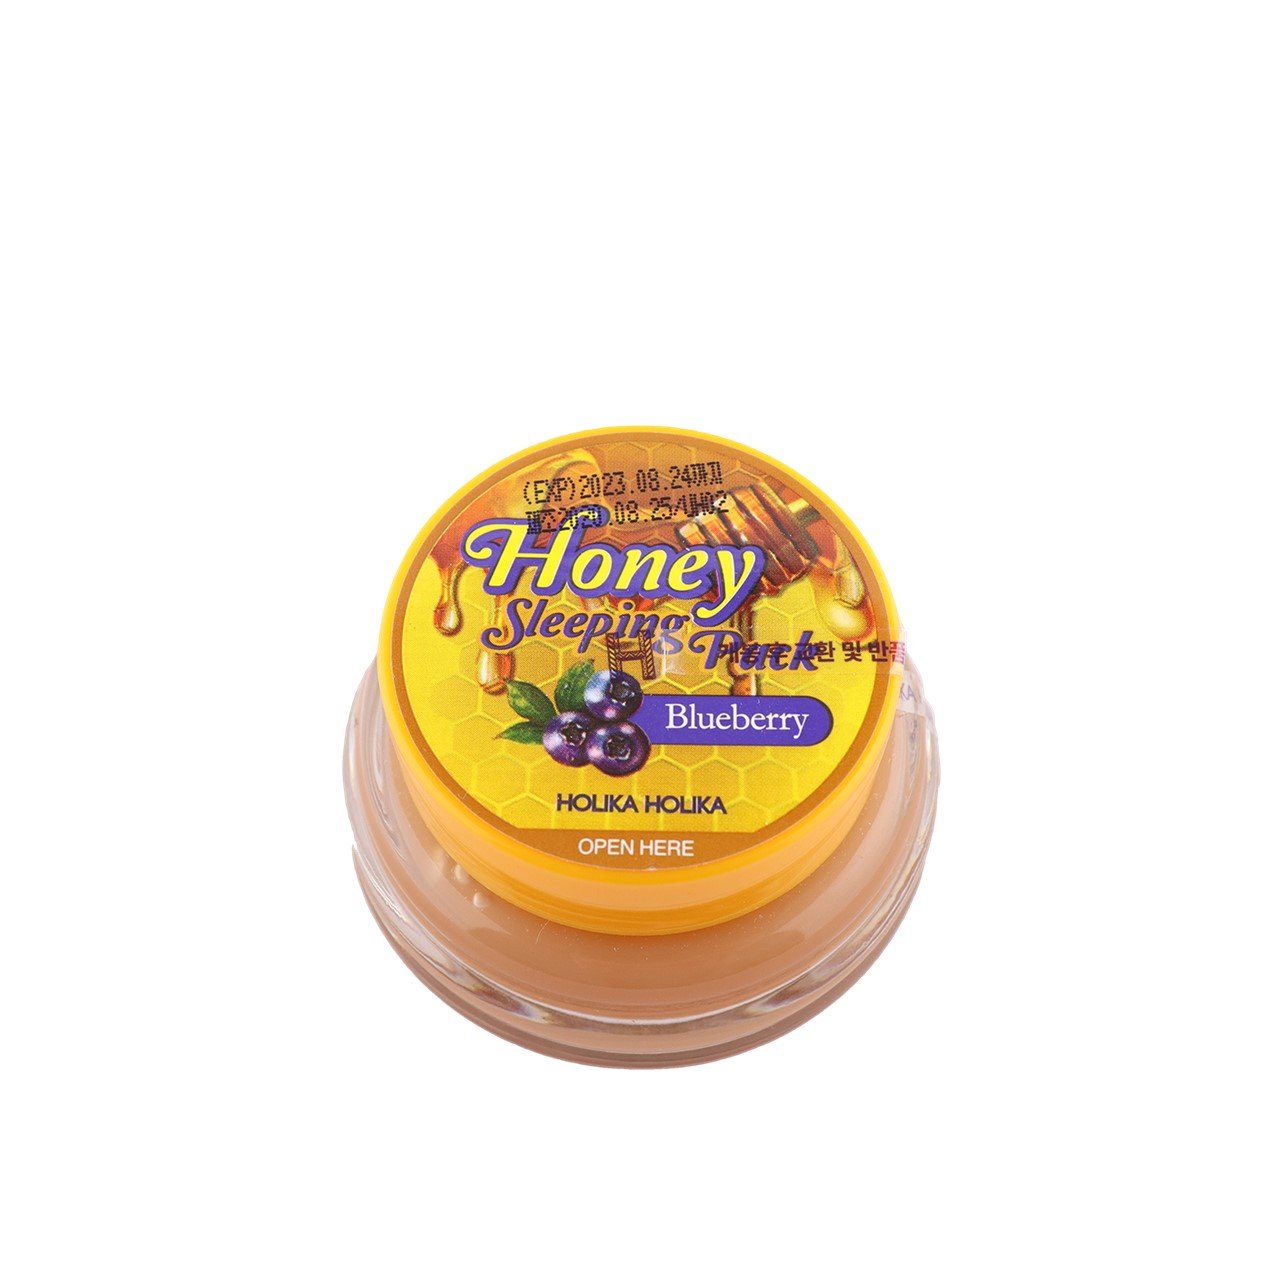 Holika Holika Honey Sleeping Pack Blueberry 90ml (3.04fl oz)